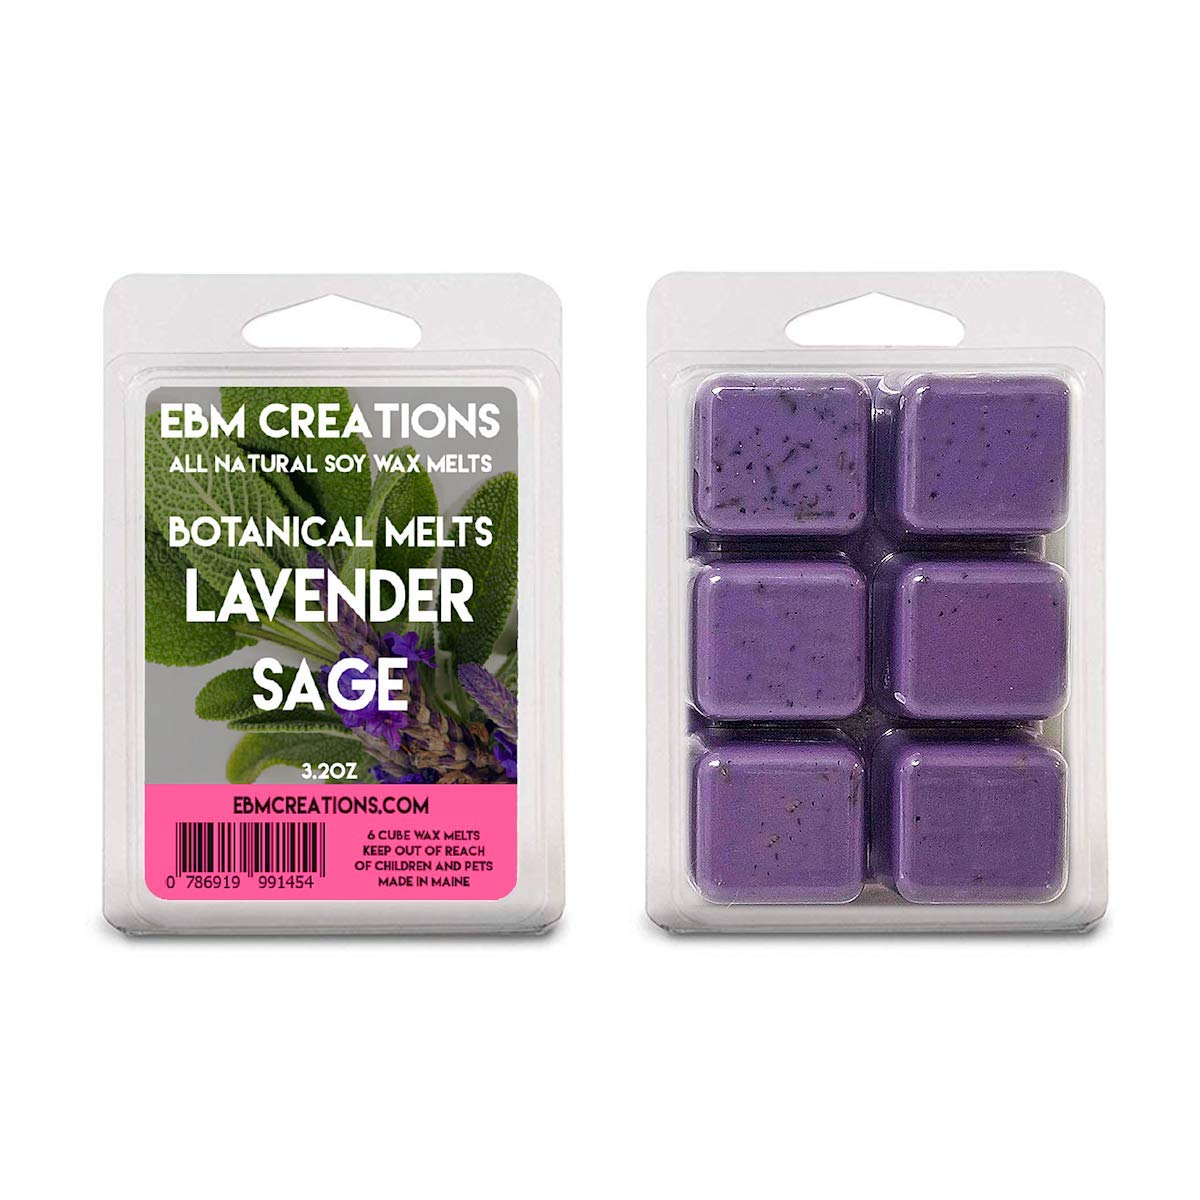 Lavender Sage Botanical Melts - 3.2 oz Clamshell - Dried Lavender Buds Inside!